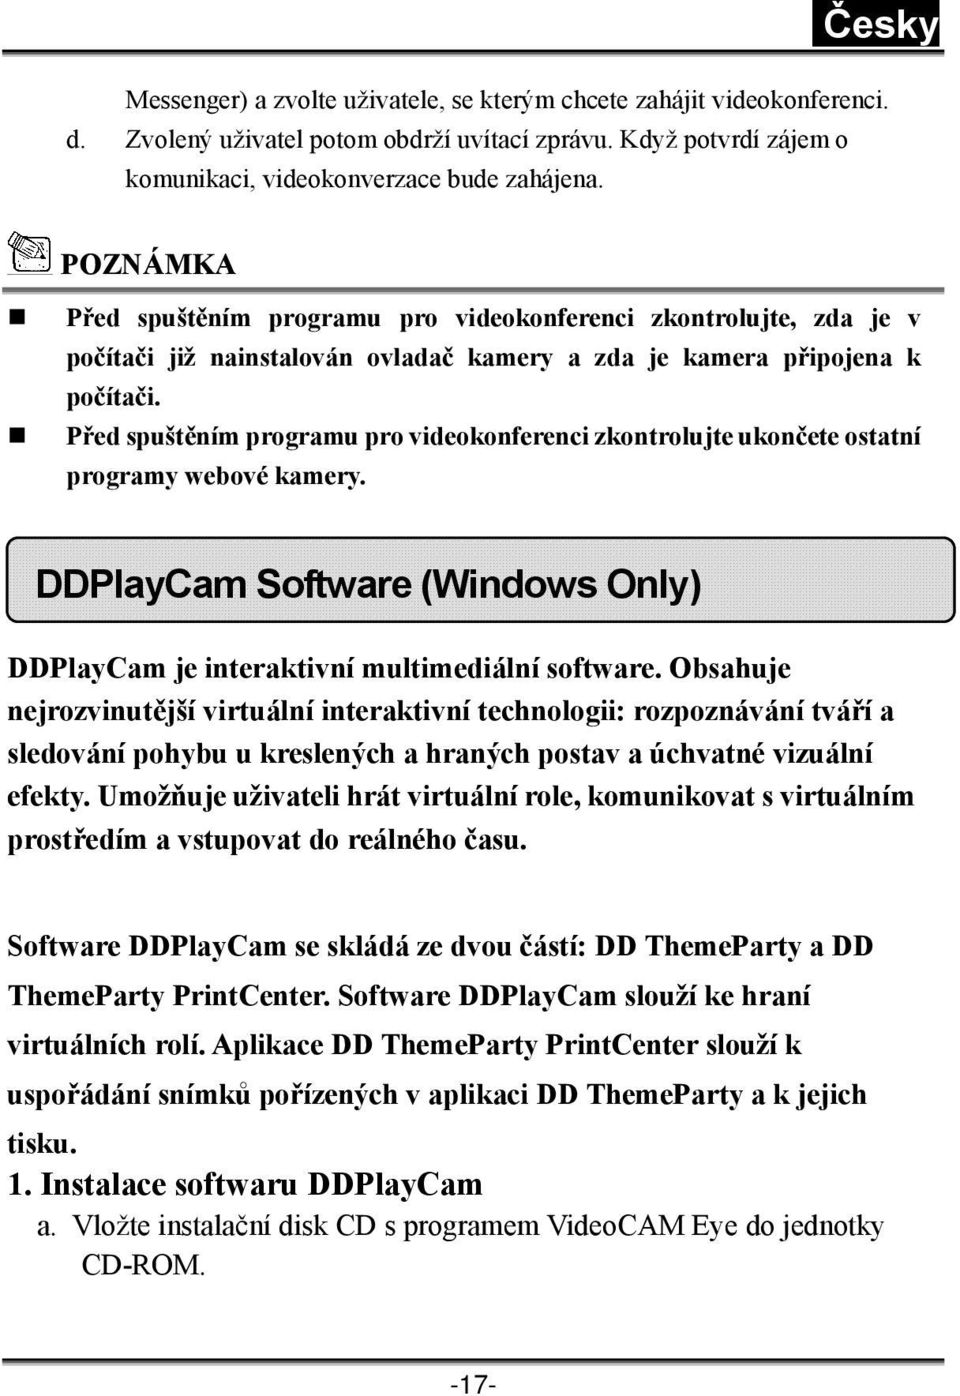 Před spuštěním programu pro videokonferenci zkontrolujte ukončete ostatní programy webové kamery. DDPlayCam Software (Windows Only) DDPlayCam je interaktivní multimediální software.